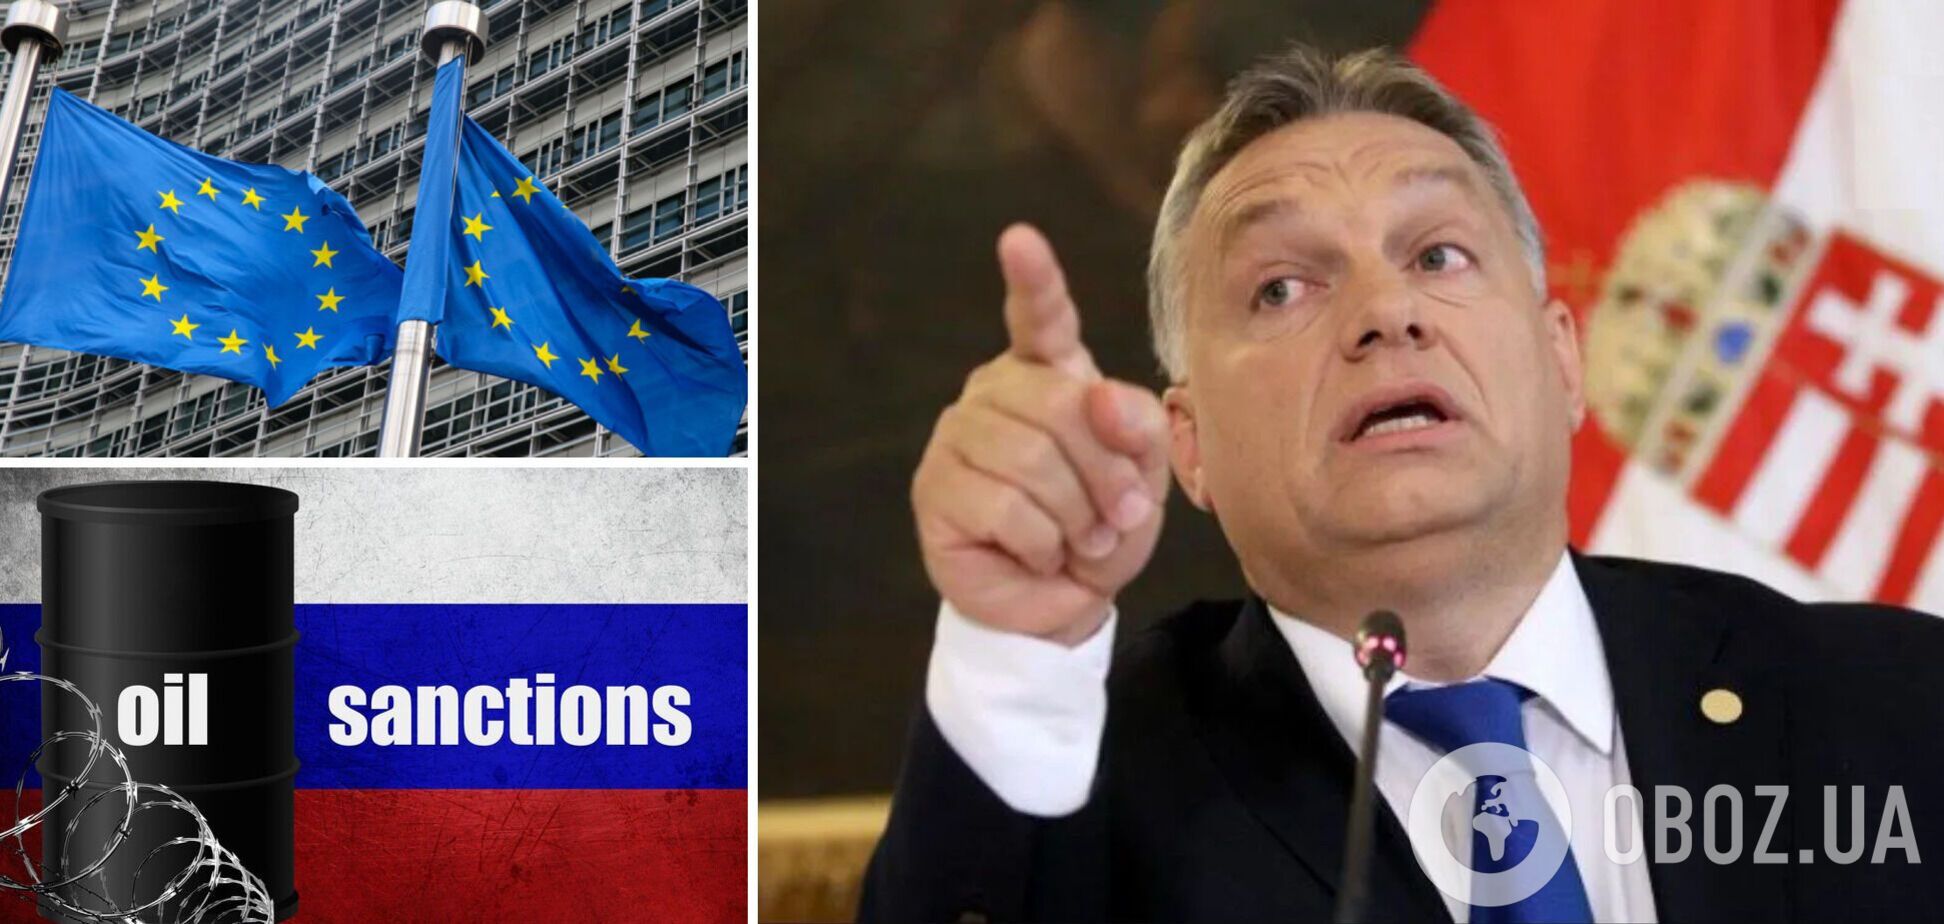 Угорщина та її прем'єр Орбан підтримують РФ